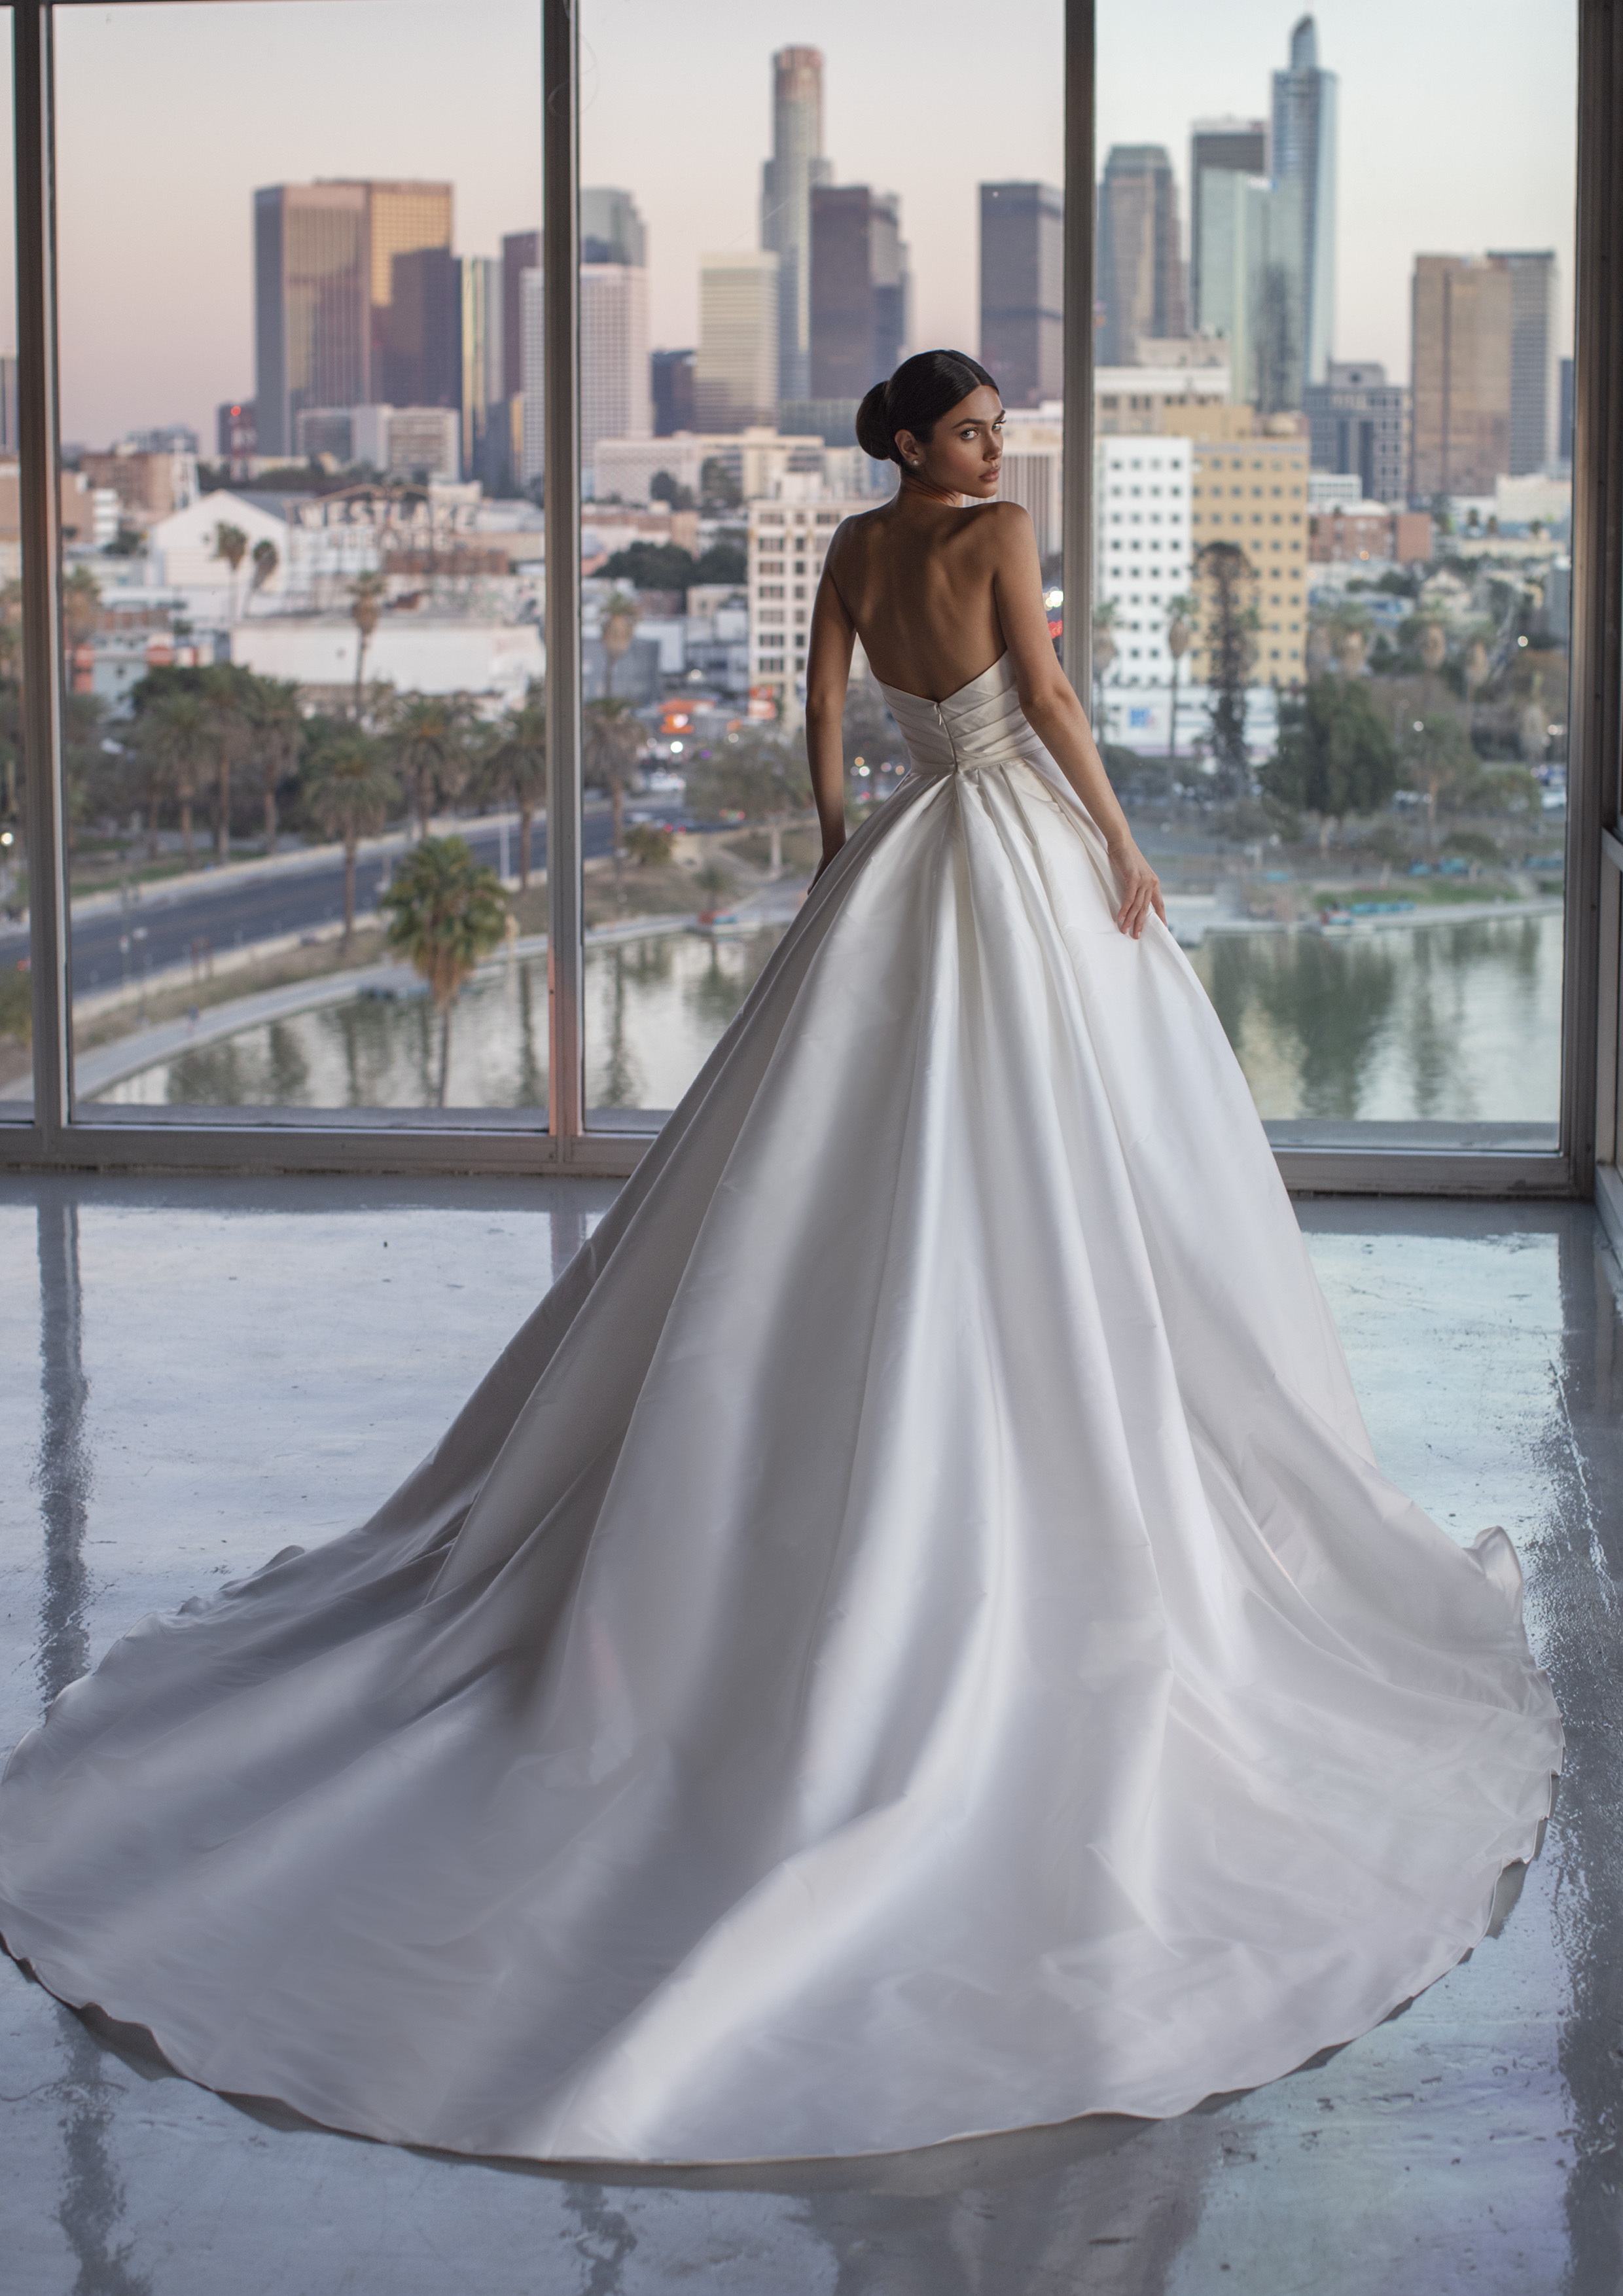 Vestido de noiva Princesa | Modelo Haver da Pronovias 2021 Cruise Collection